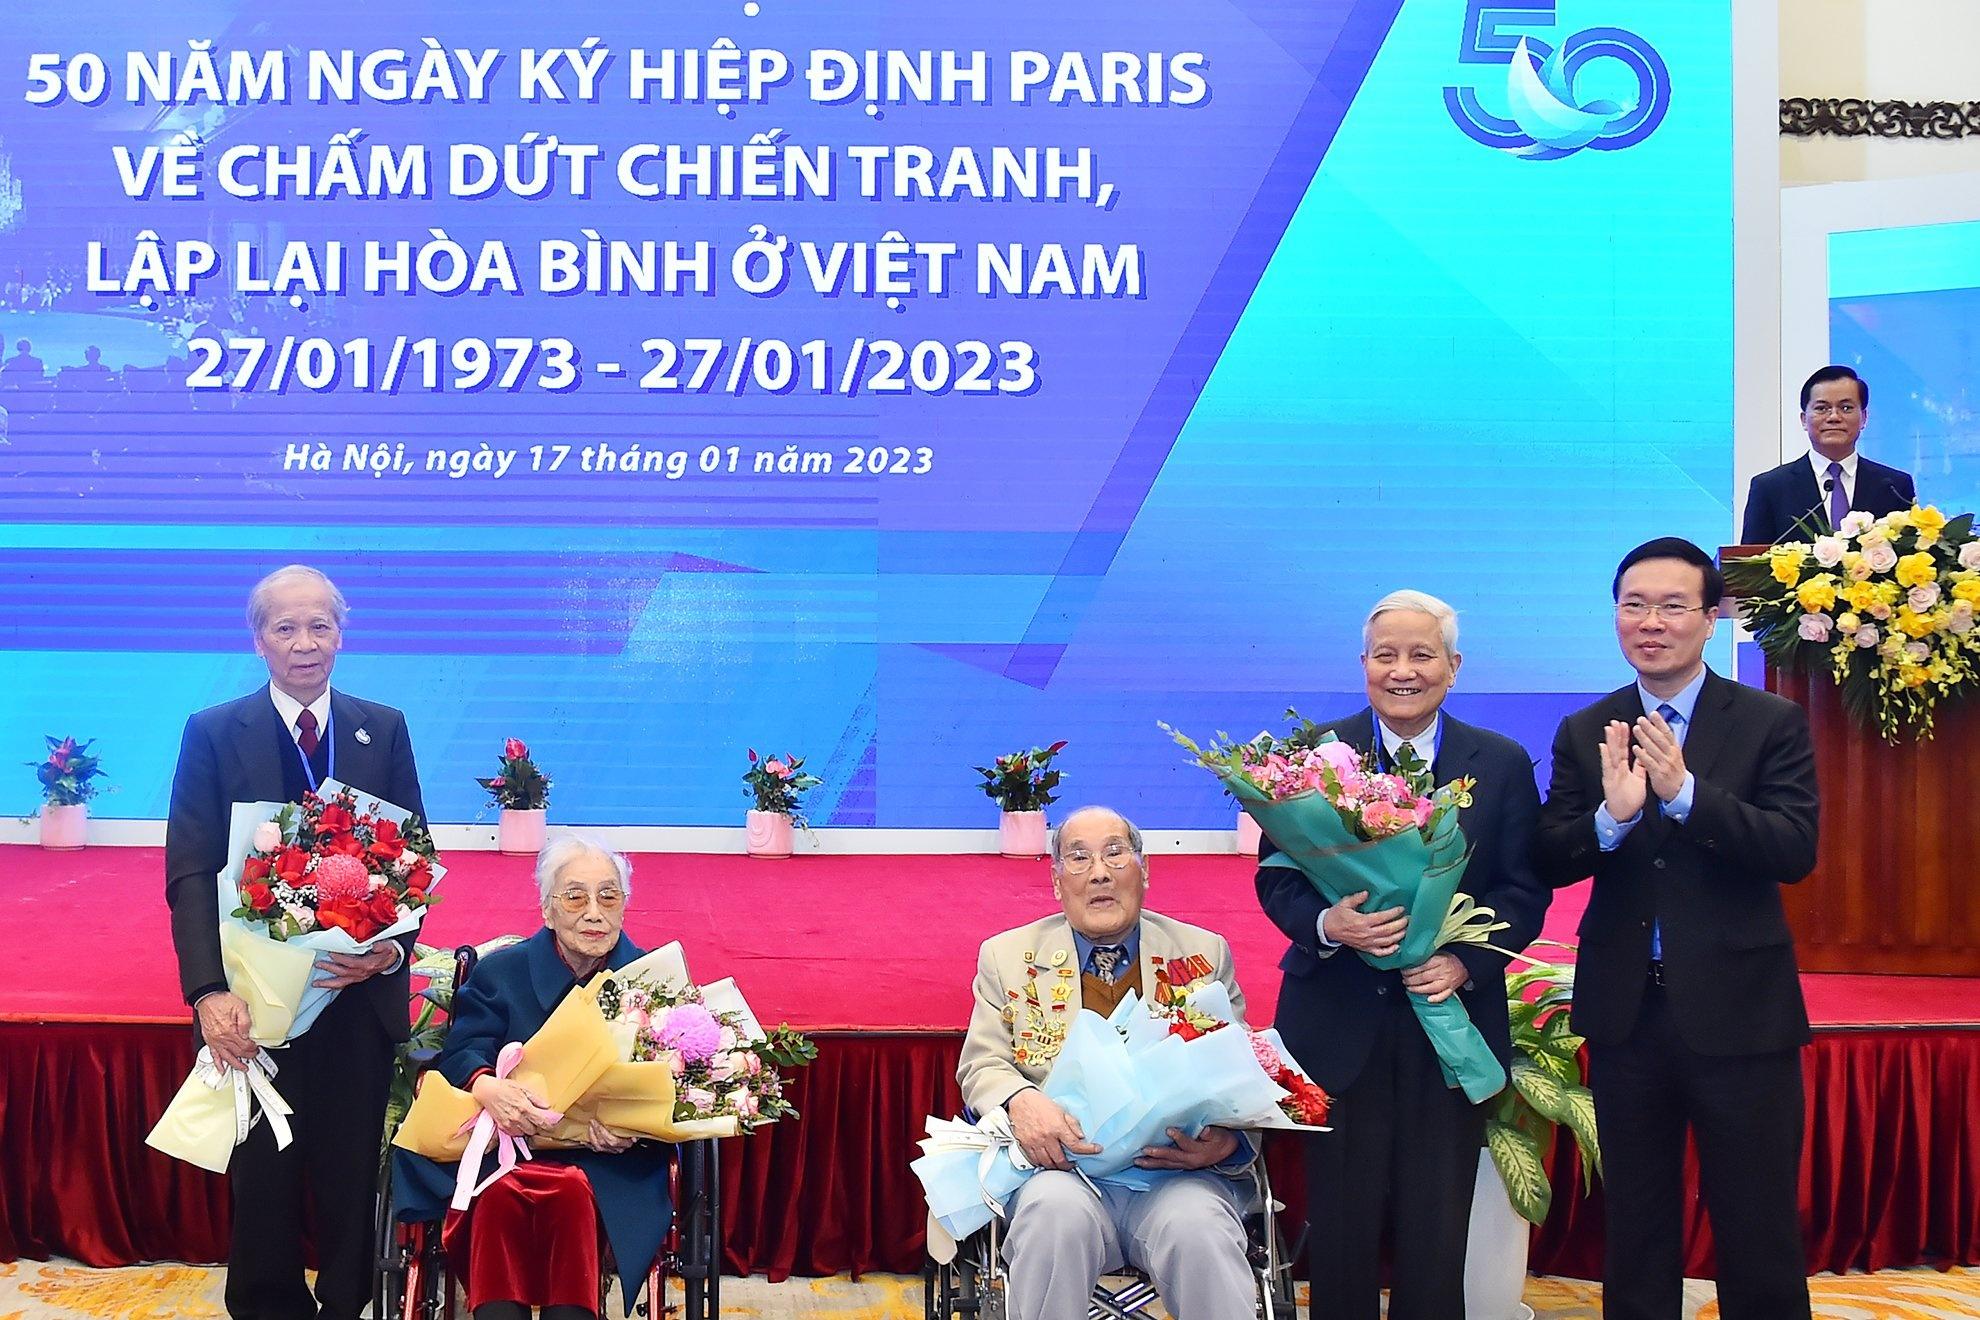 Bà Nguyễn Thị Bình: 'Hiệp định Paris là thắng lợi quyết định đi đến thống nhất đất nước' - ảnh 4